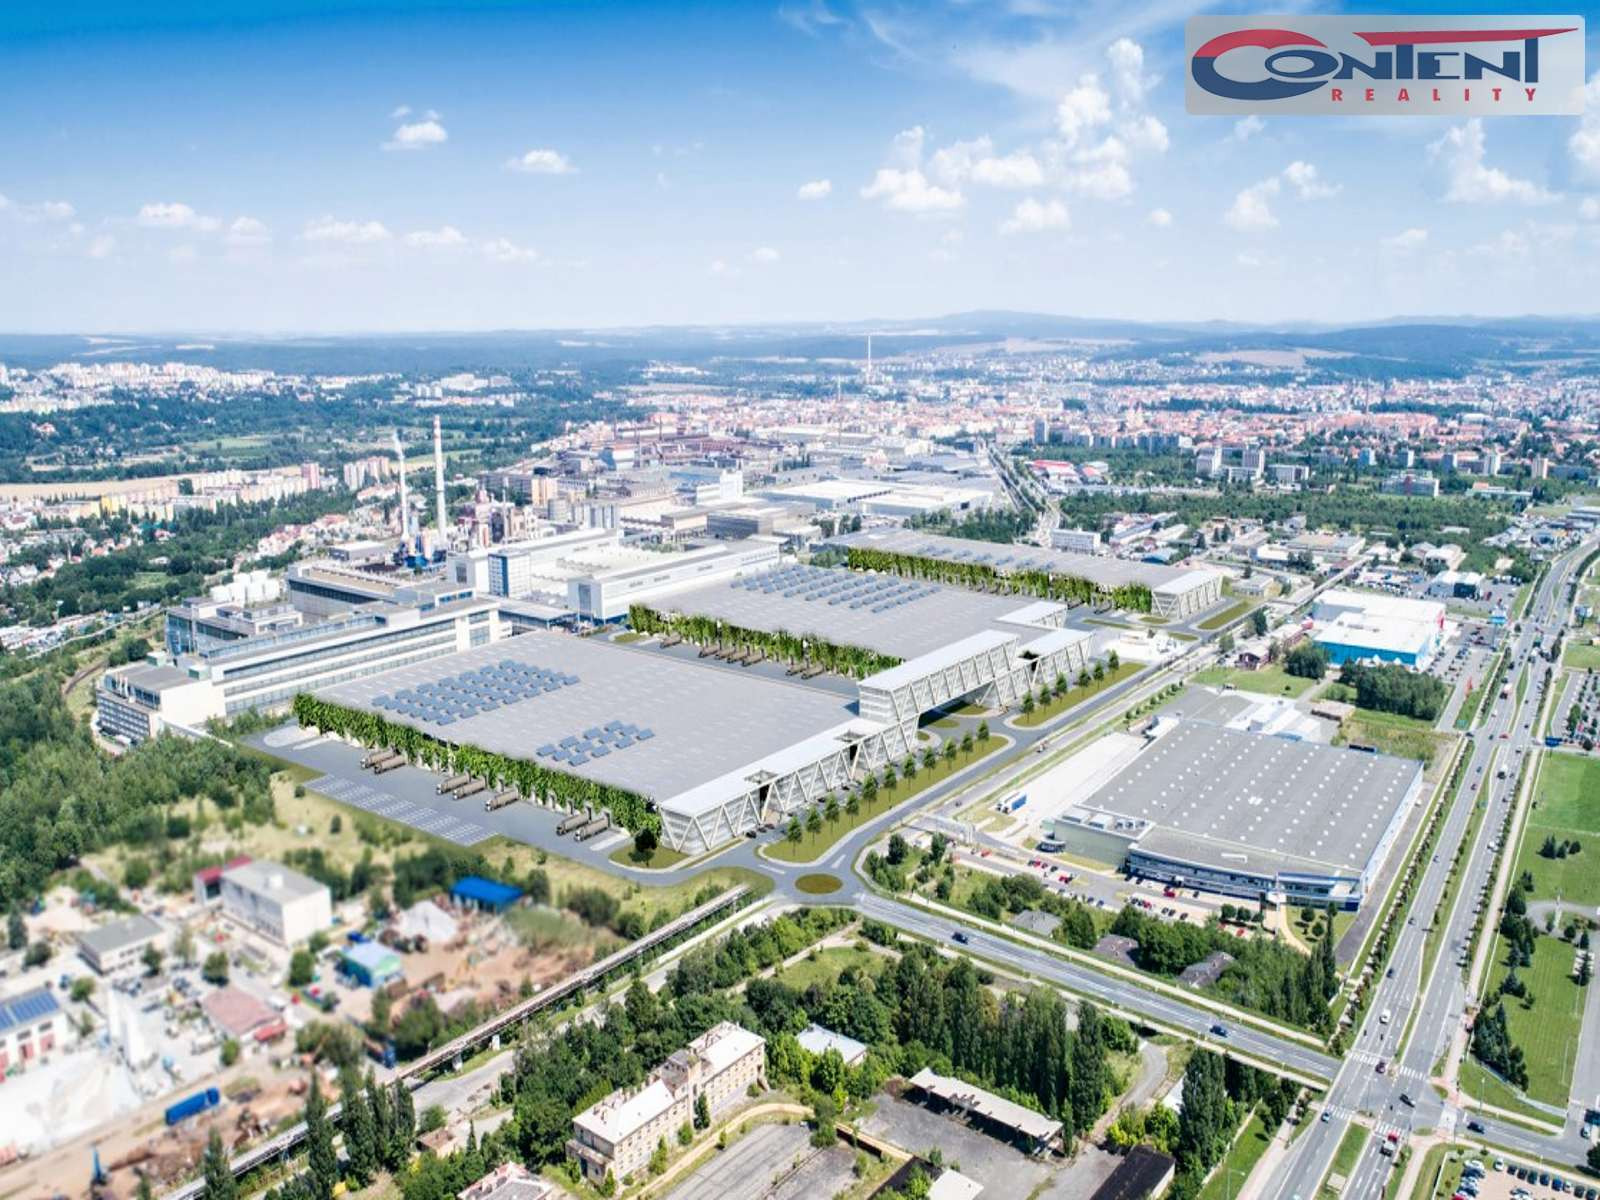 Pronájem skladu, výrobních prostor 15.000 m², Plzeň